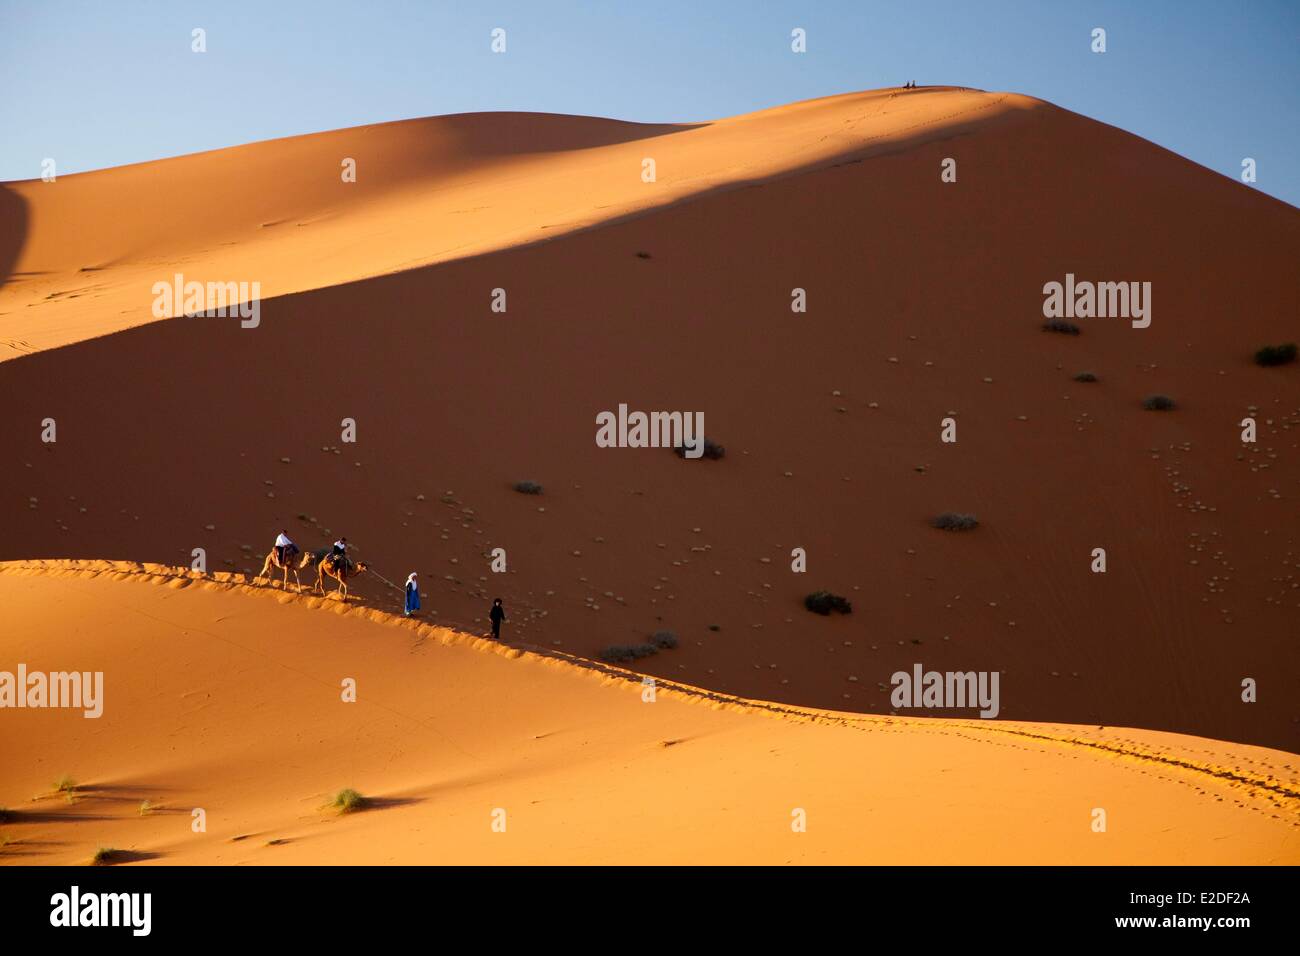 Morocco, Tafilalet region, Merzouga, erg Chebbi desert, camel trek on sand dunes Stock Photo